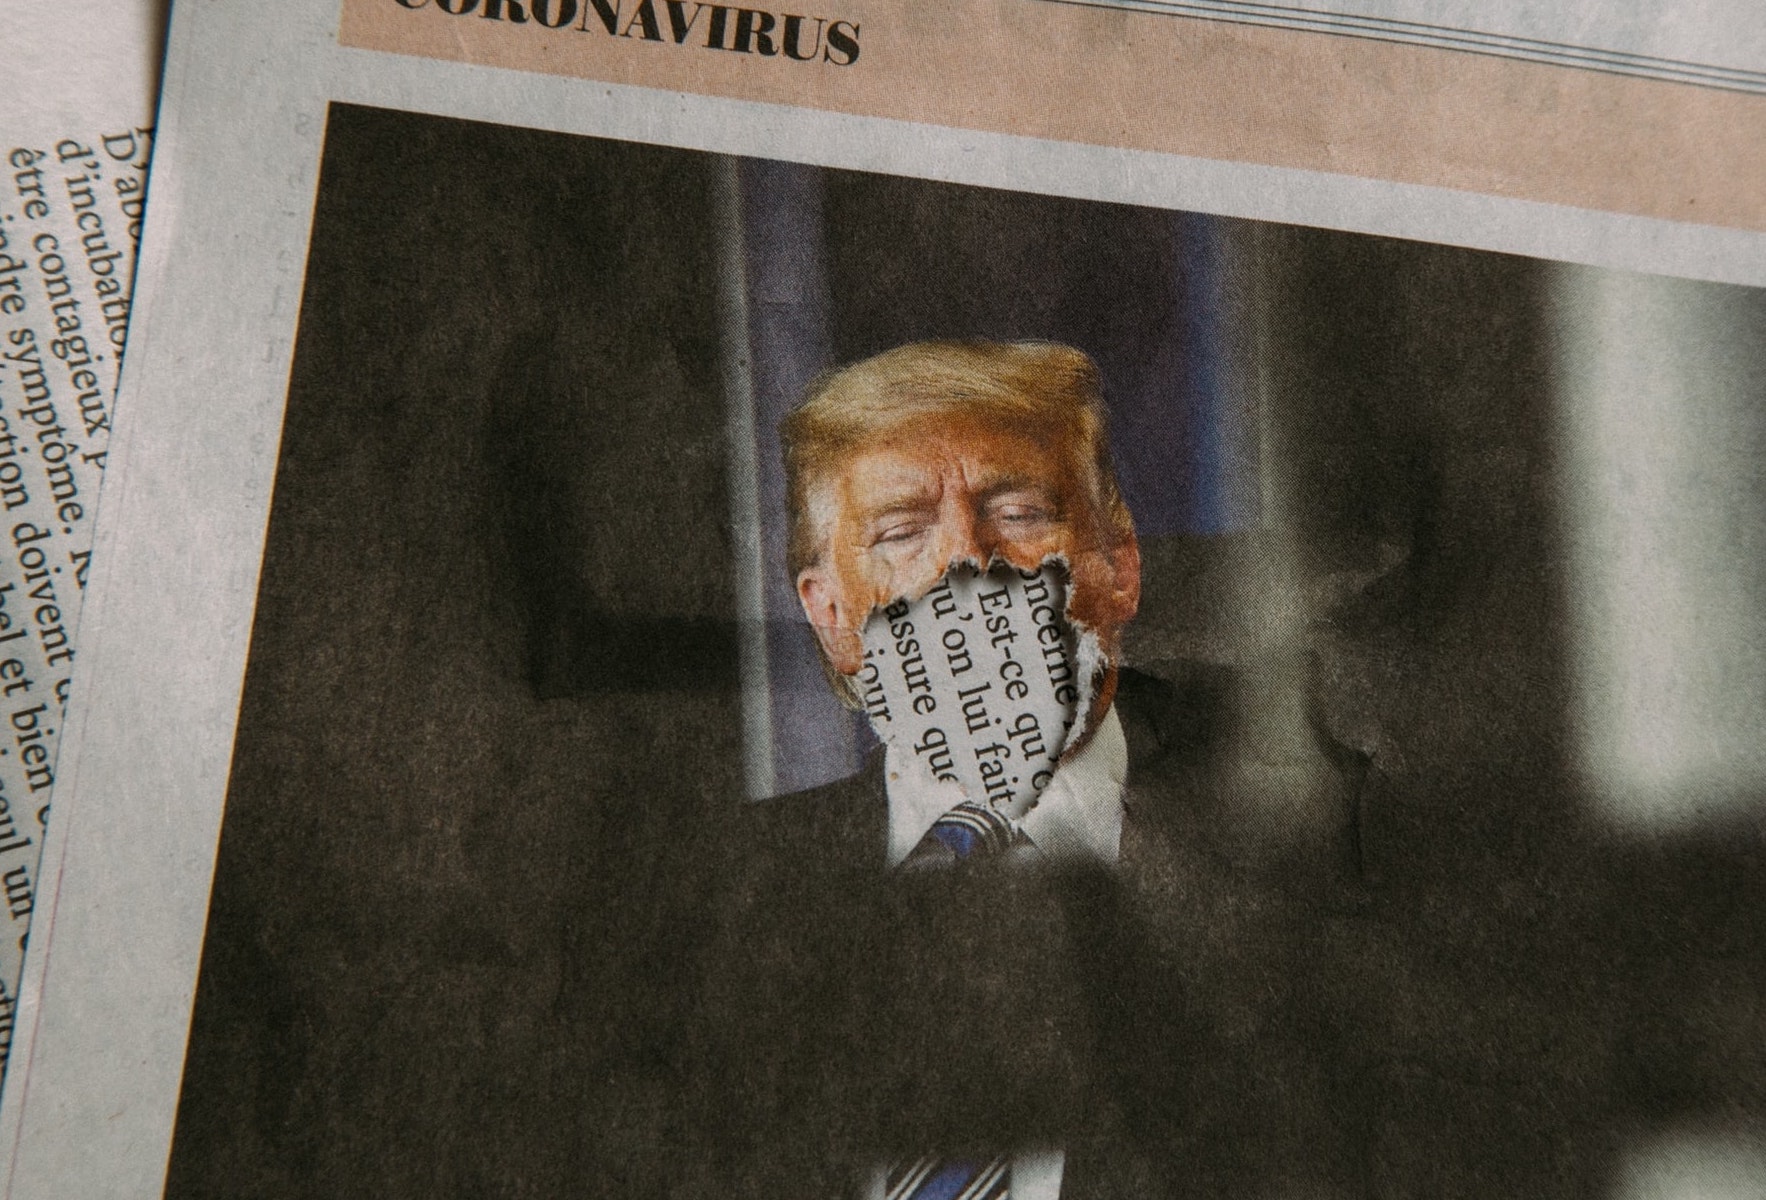 Trump in a Newspaper